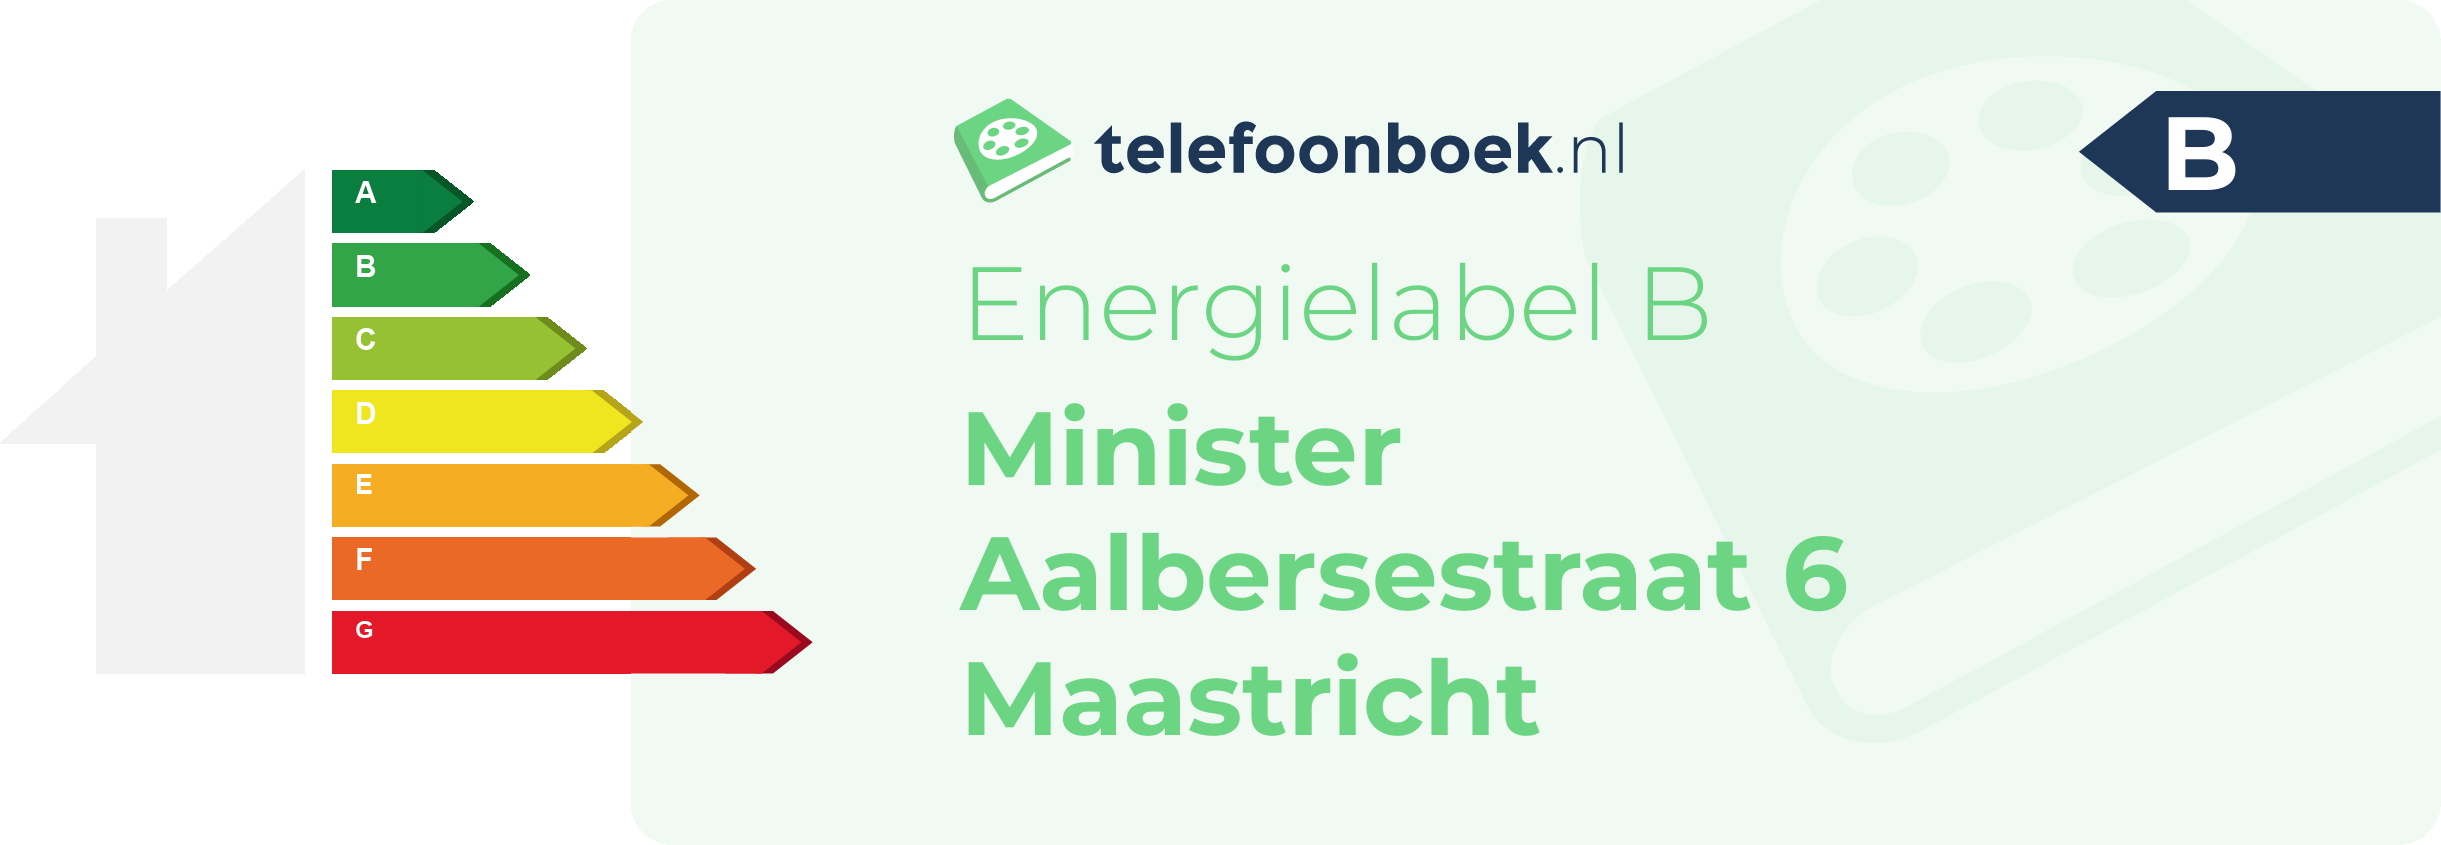 Energielabel Minister Aalbersestraat 6 Maastricht